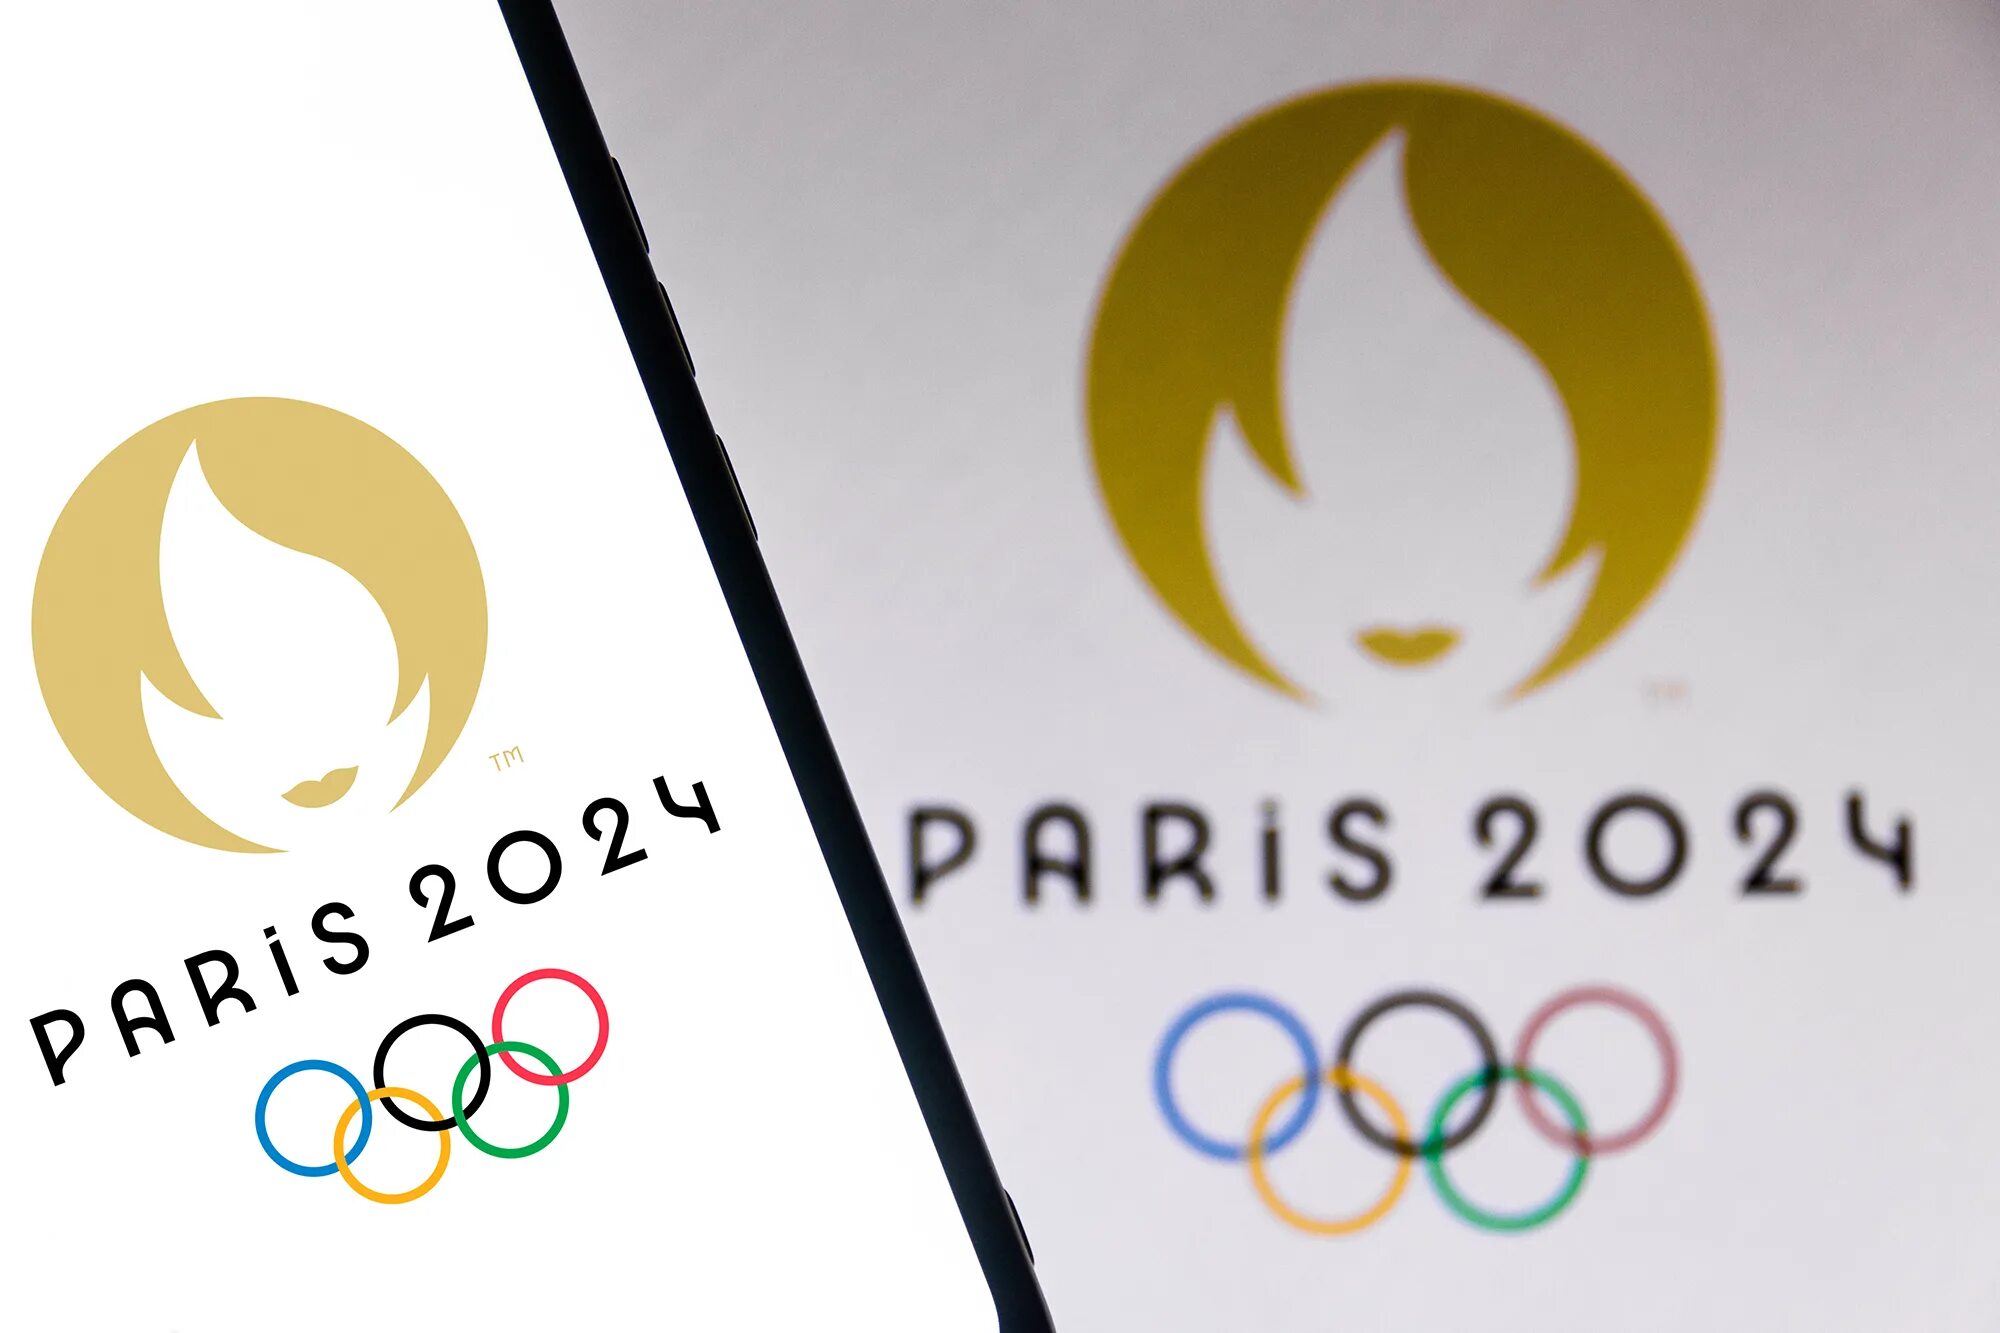 Олимпийские игры в Париже 2024. Олимпийский Париж 2024. Эмблема Олимпийских игр в Париже 2024. Где проходят олимпийские игры 2024 года